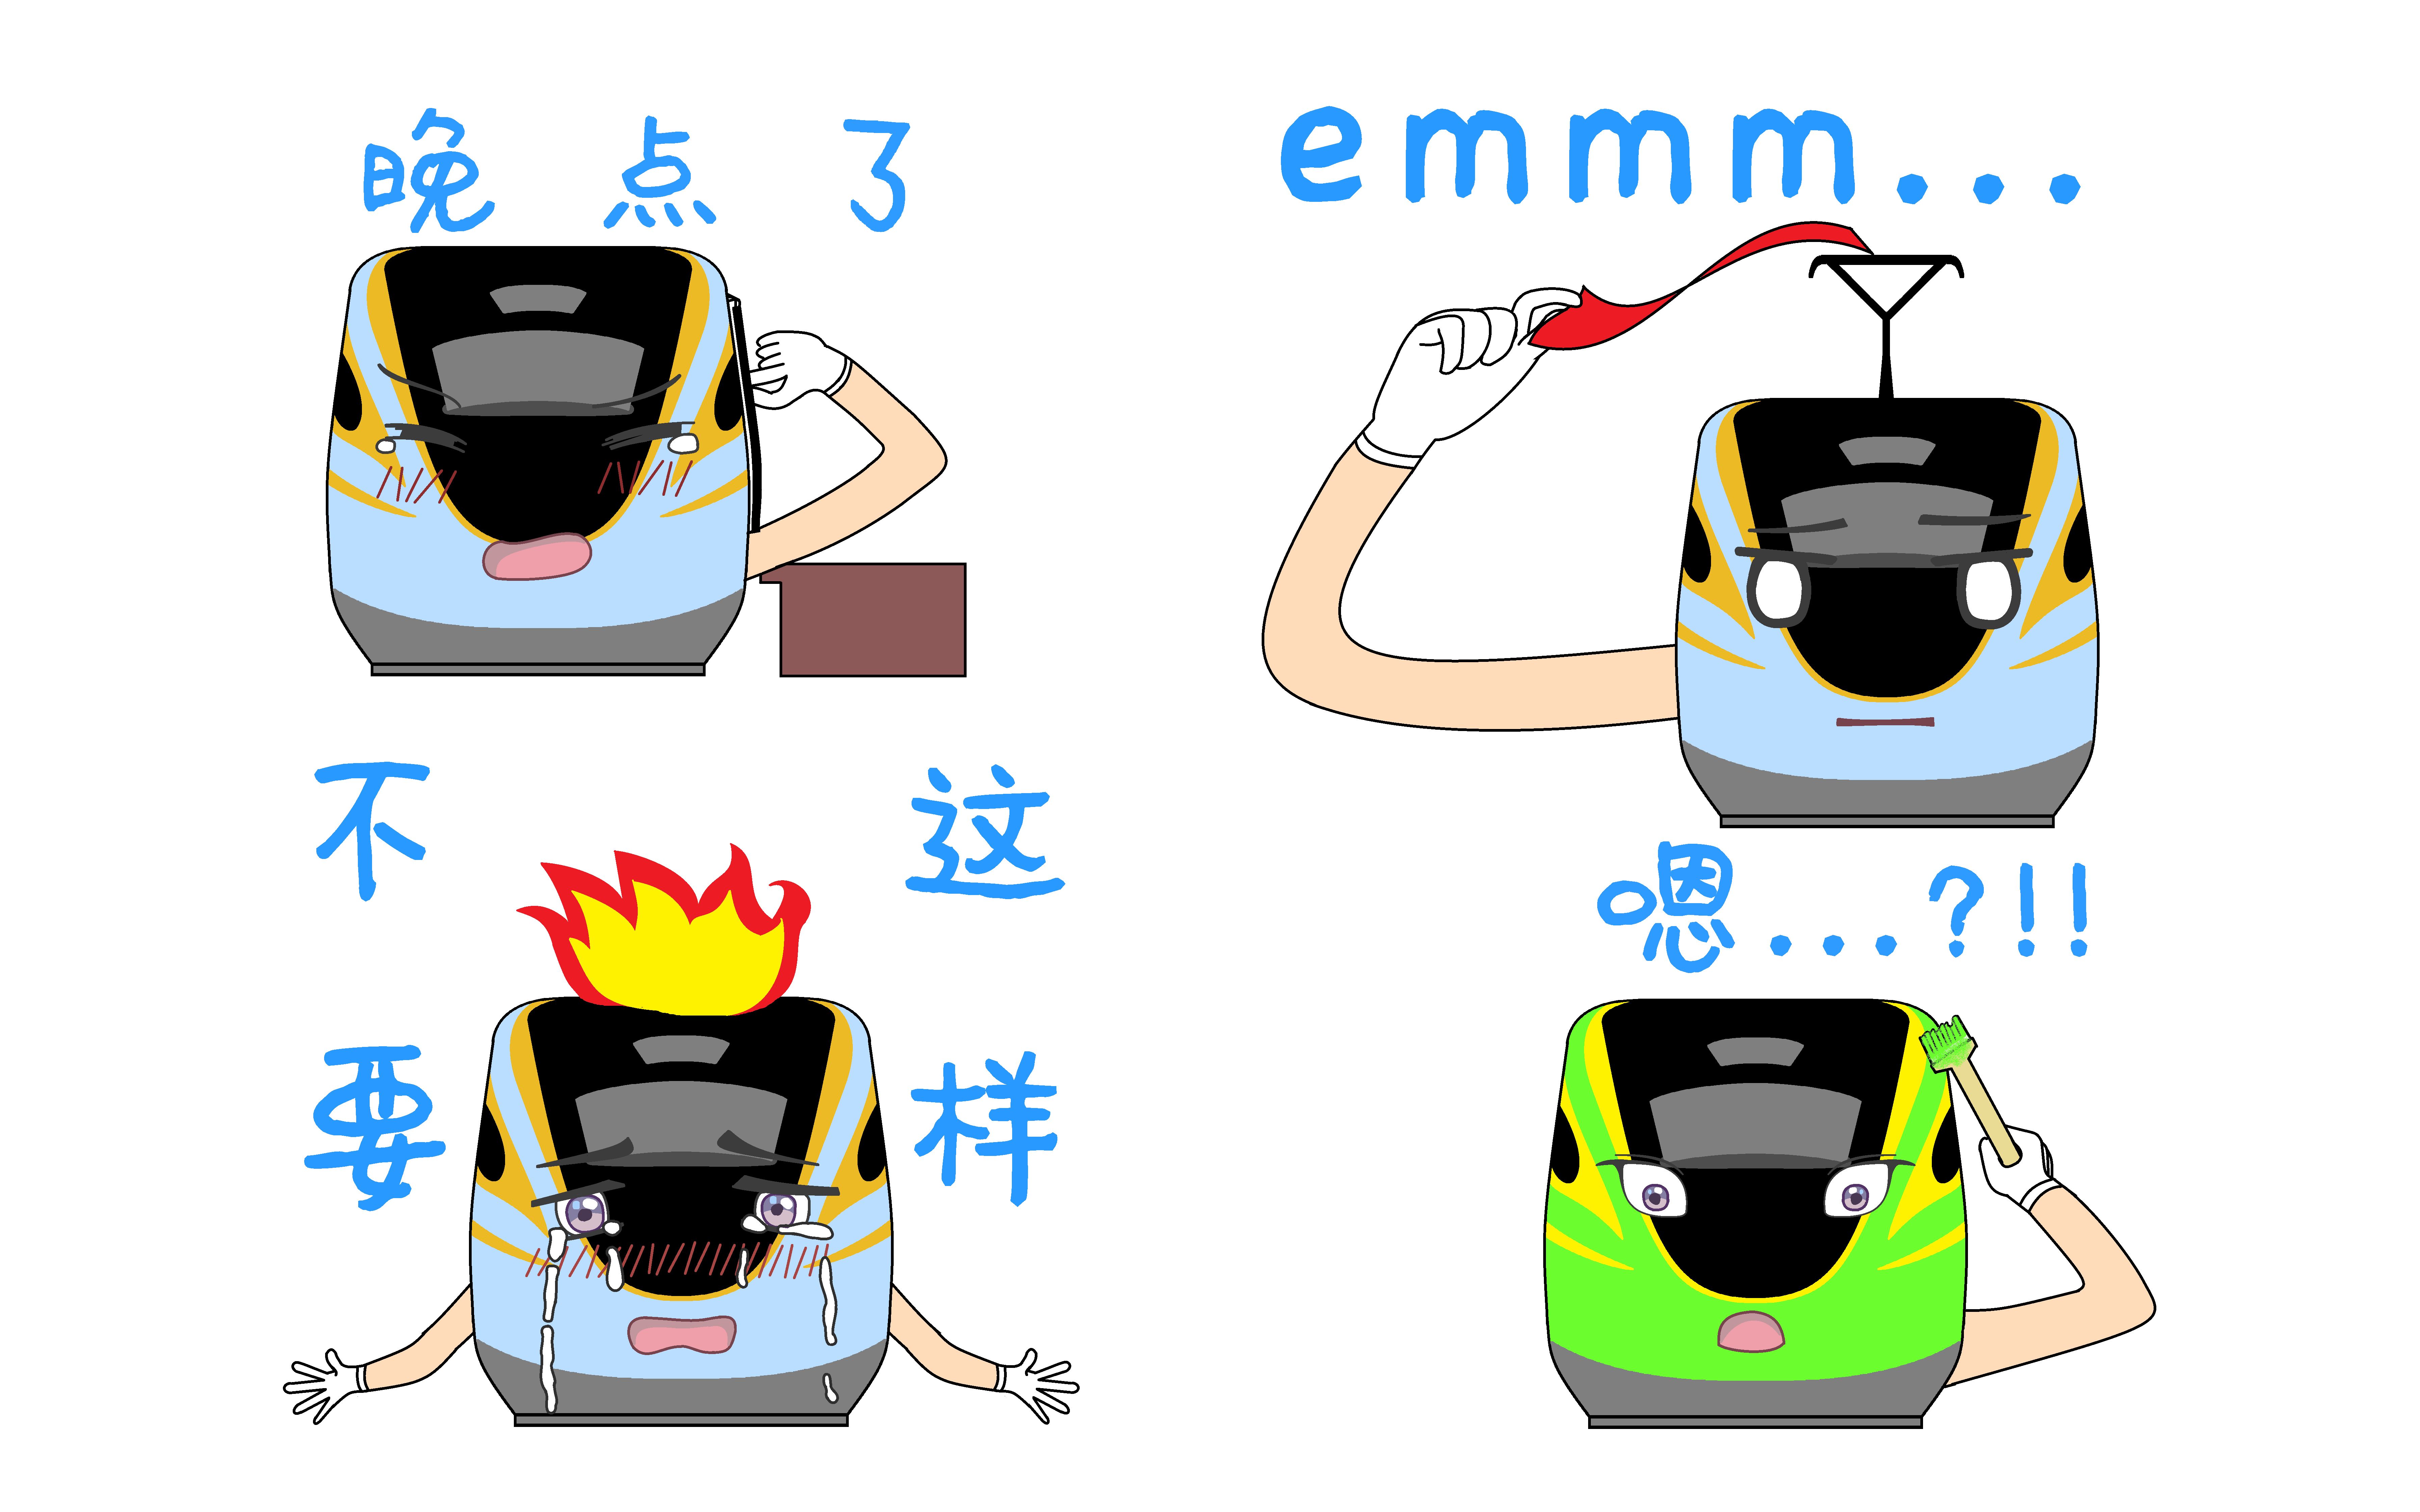 中国火车表情包图片